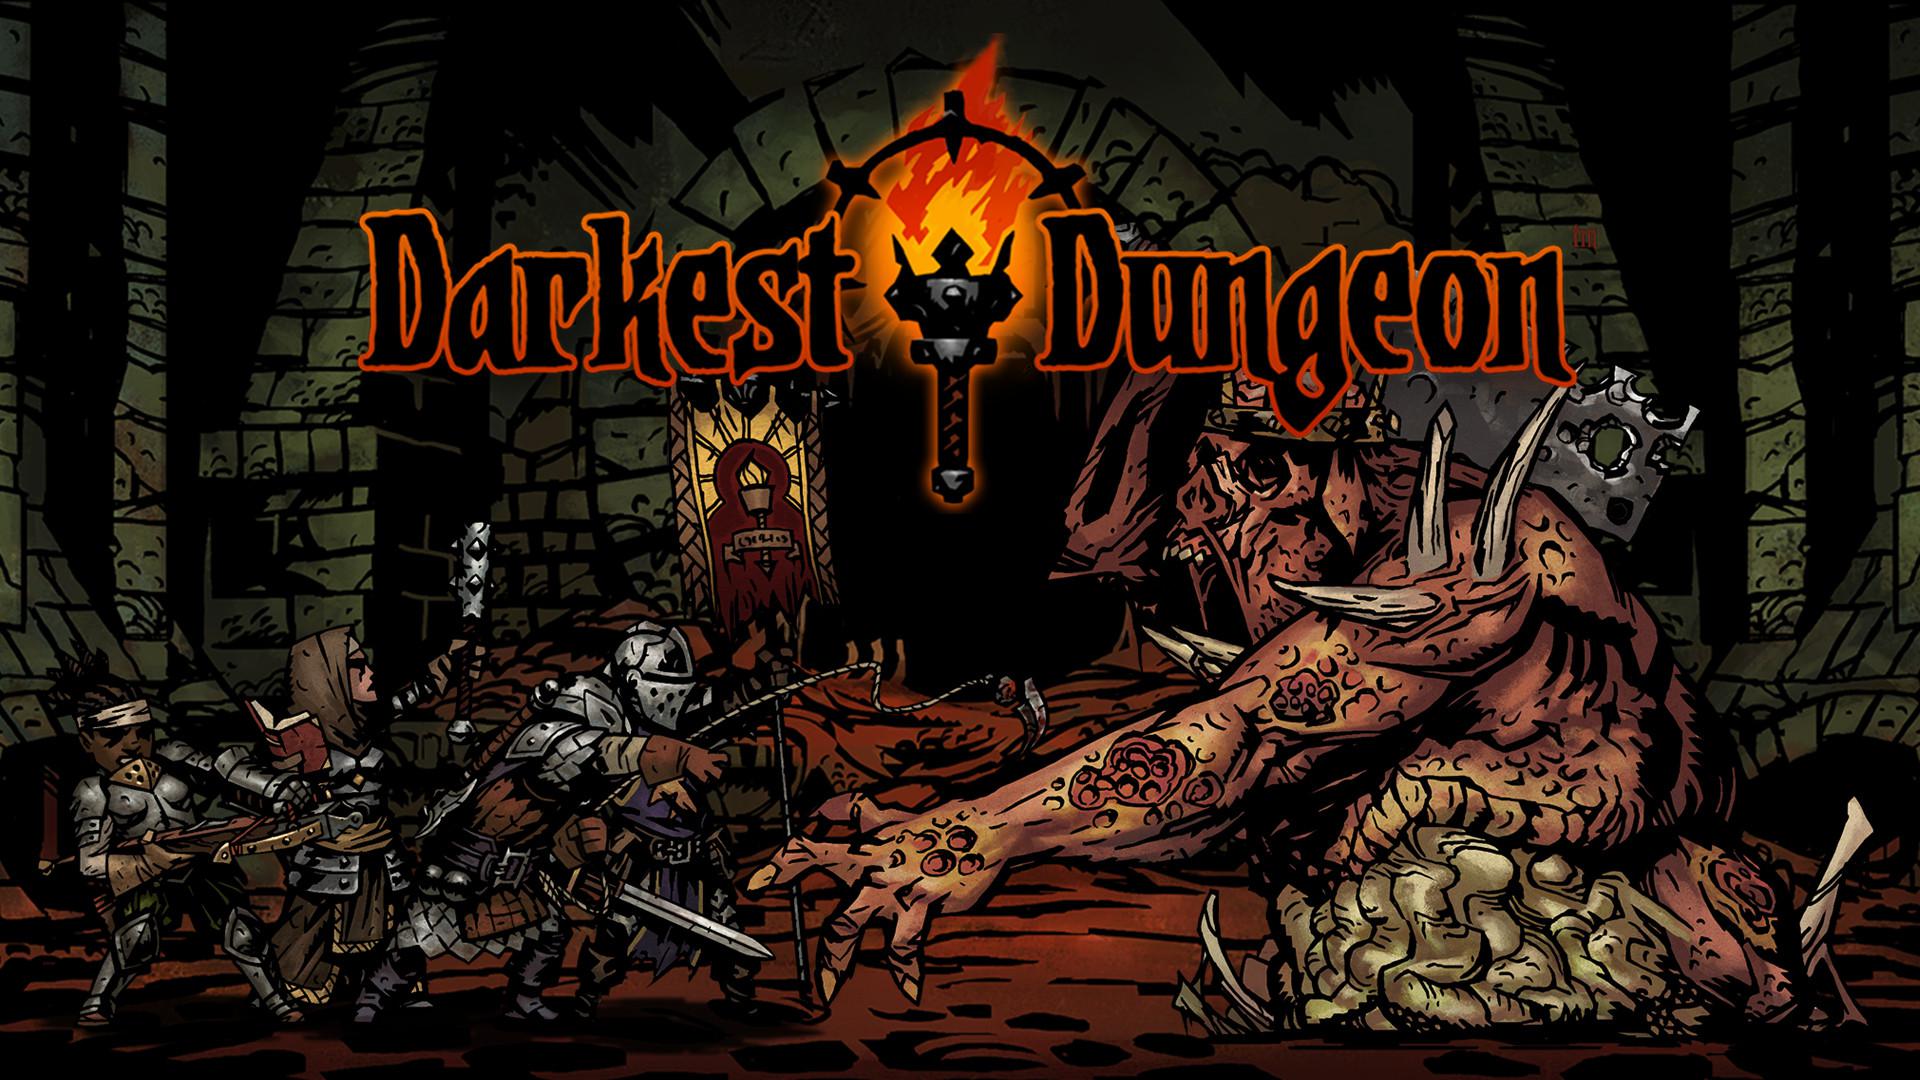 Download Full Hd Darkest Dungeon Desktop Wallpaper - Darkest Dungeon Wallpaper Hd - HD Wallpaper 